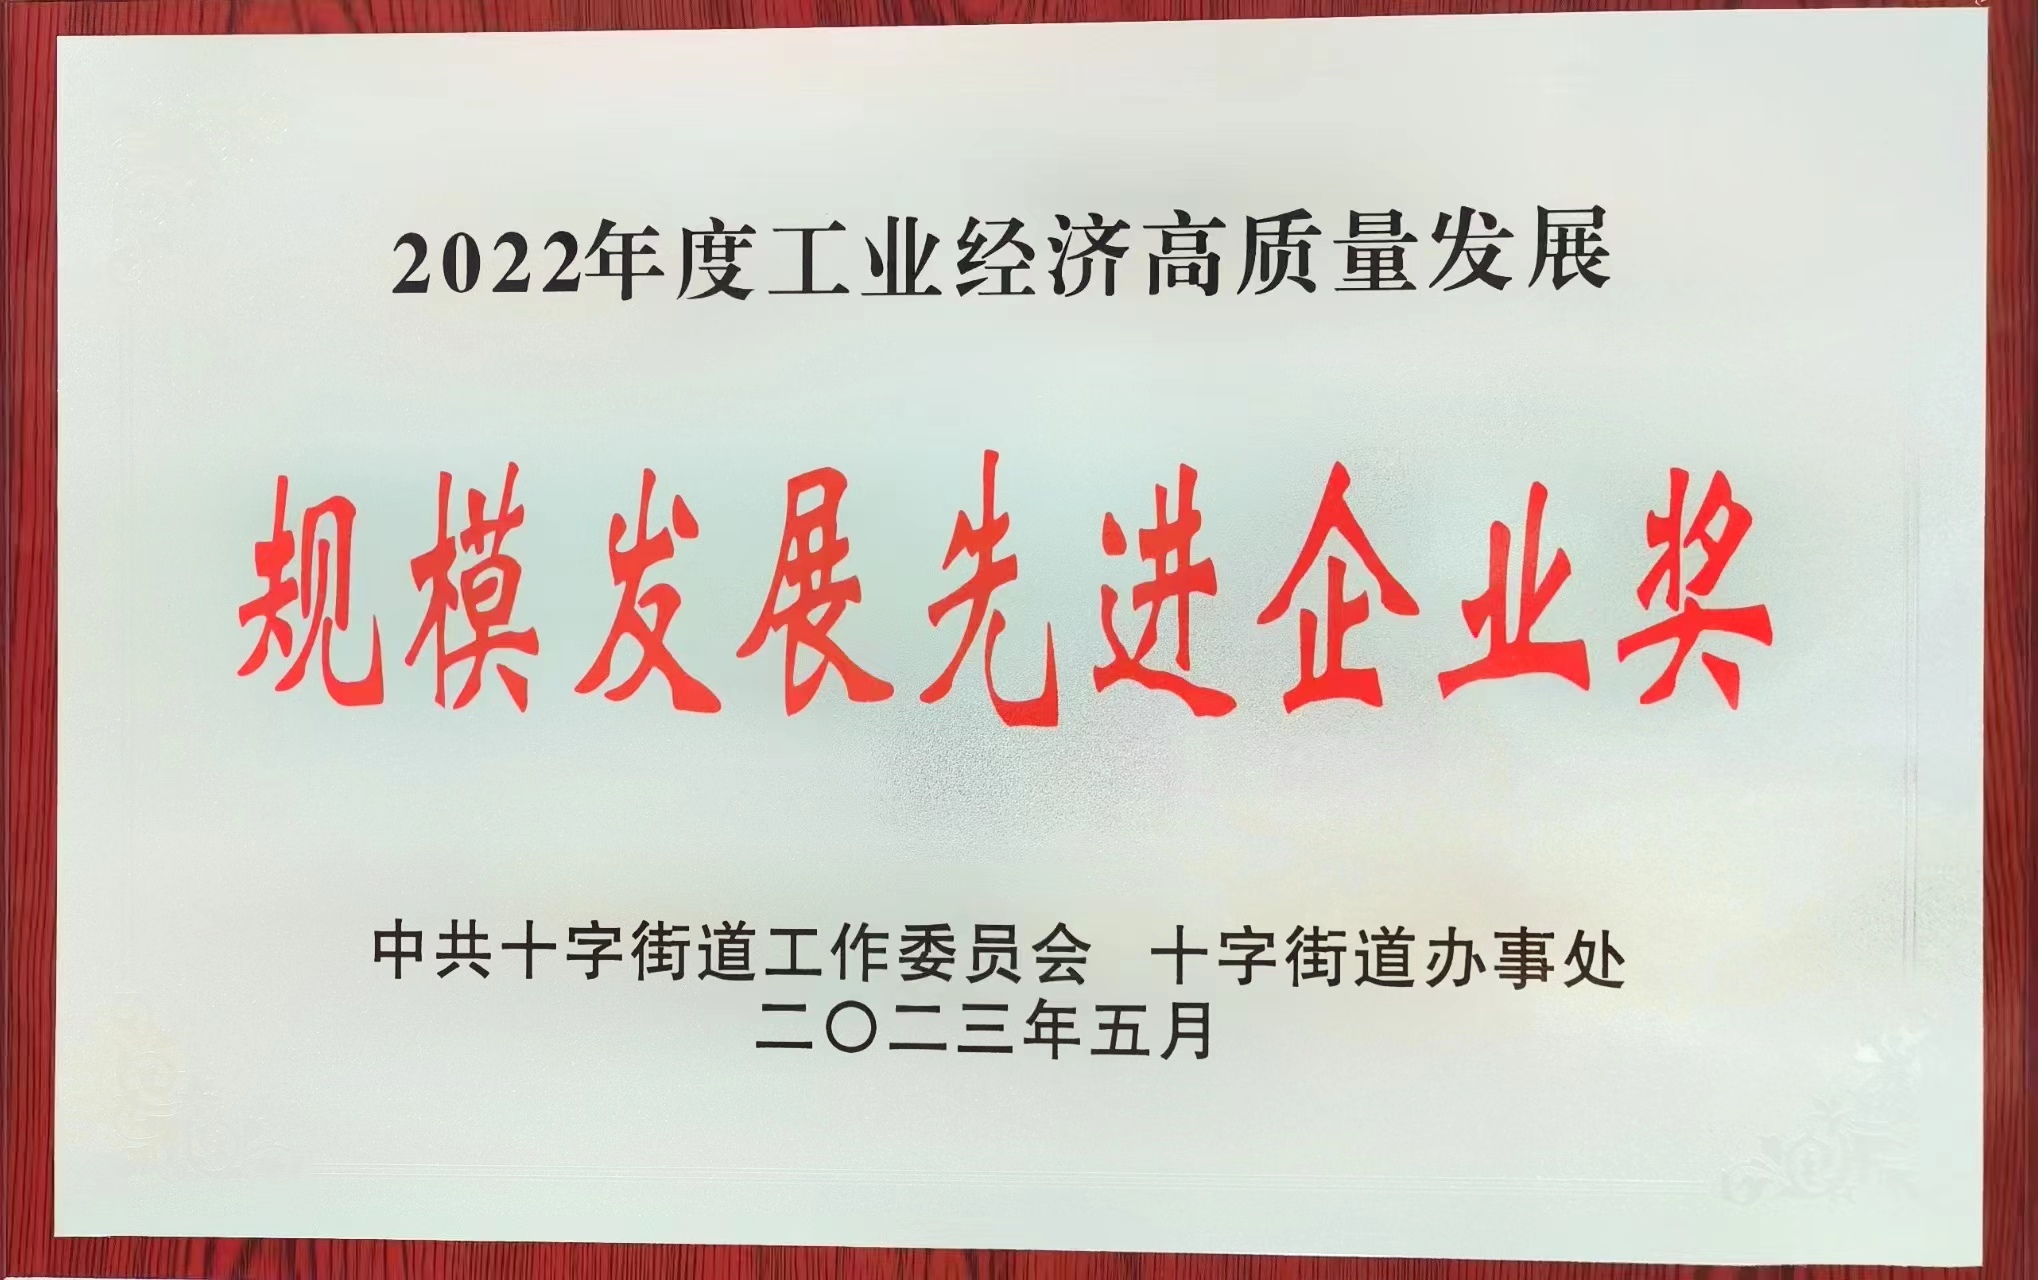 富滤盛江苏工厂再次获评“2022年度工业经济高质量发展 规模发展先进企业”